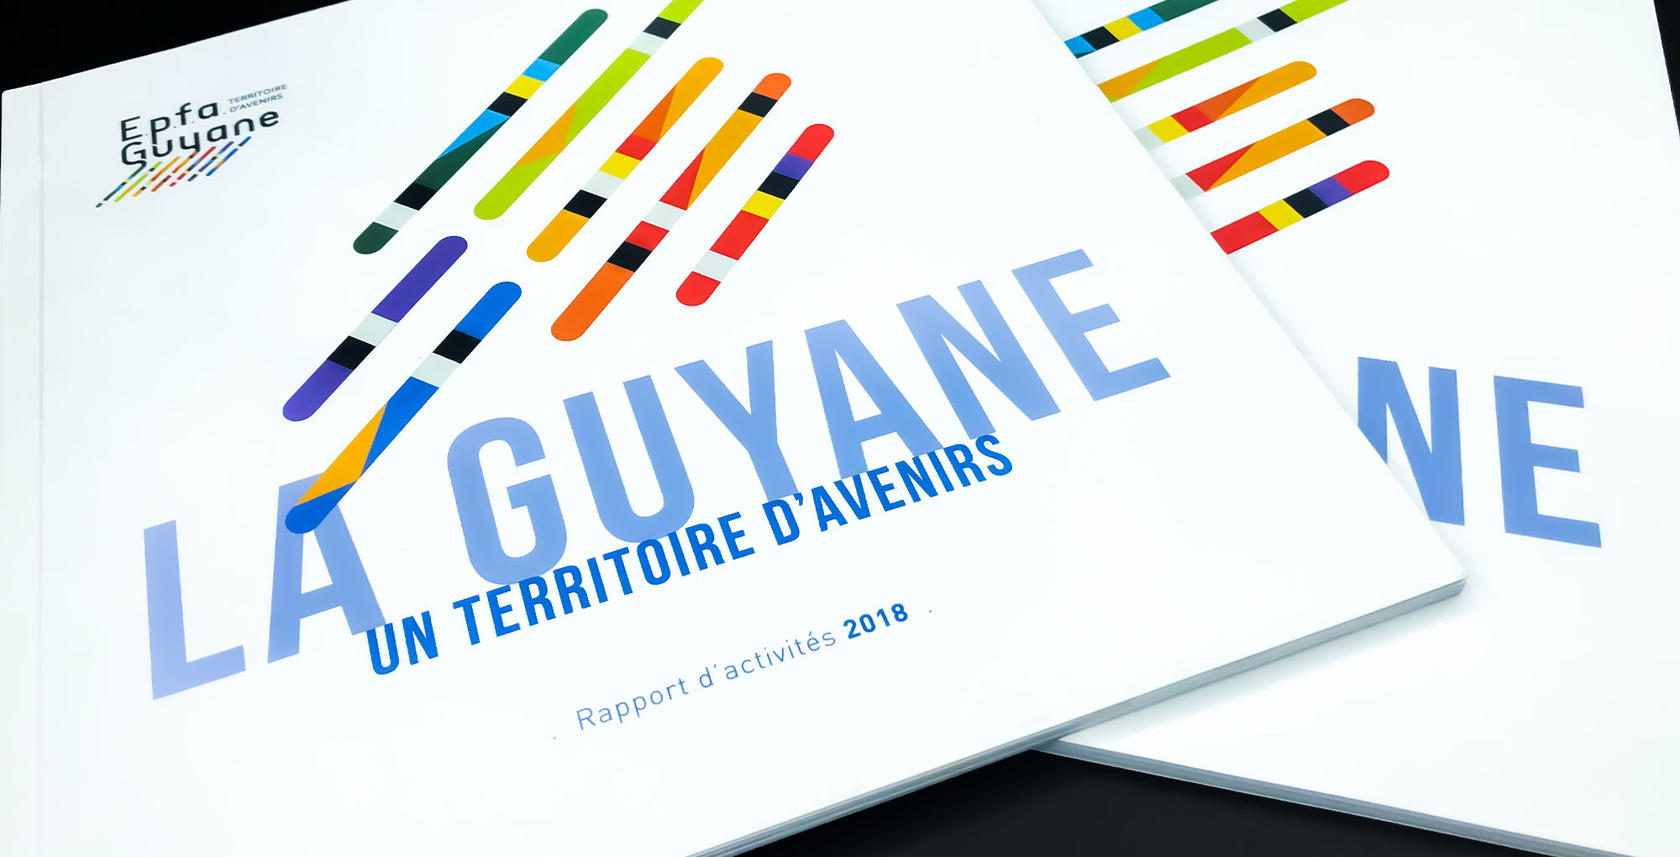 EPFA Guyane - voeux 2018